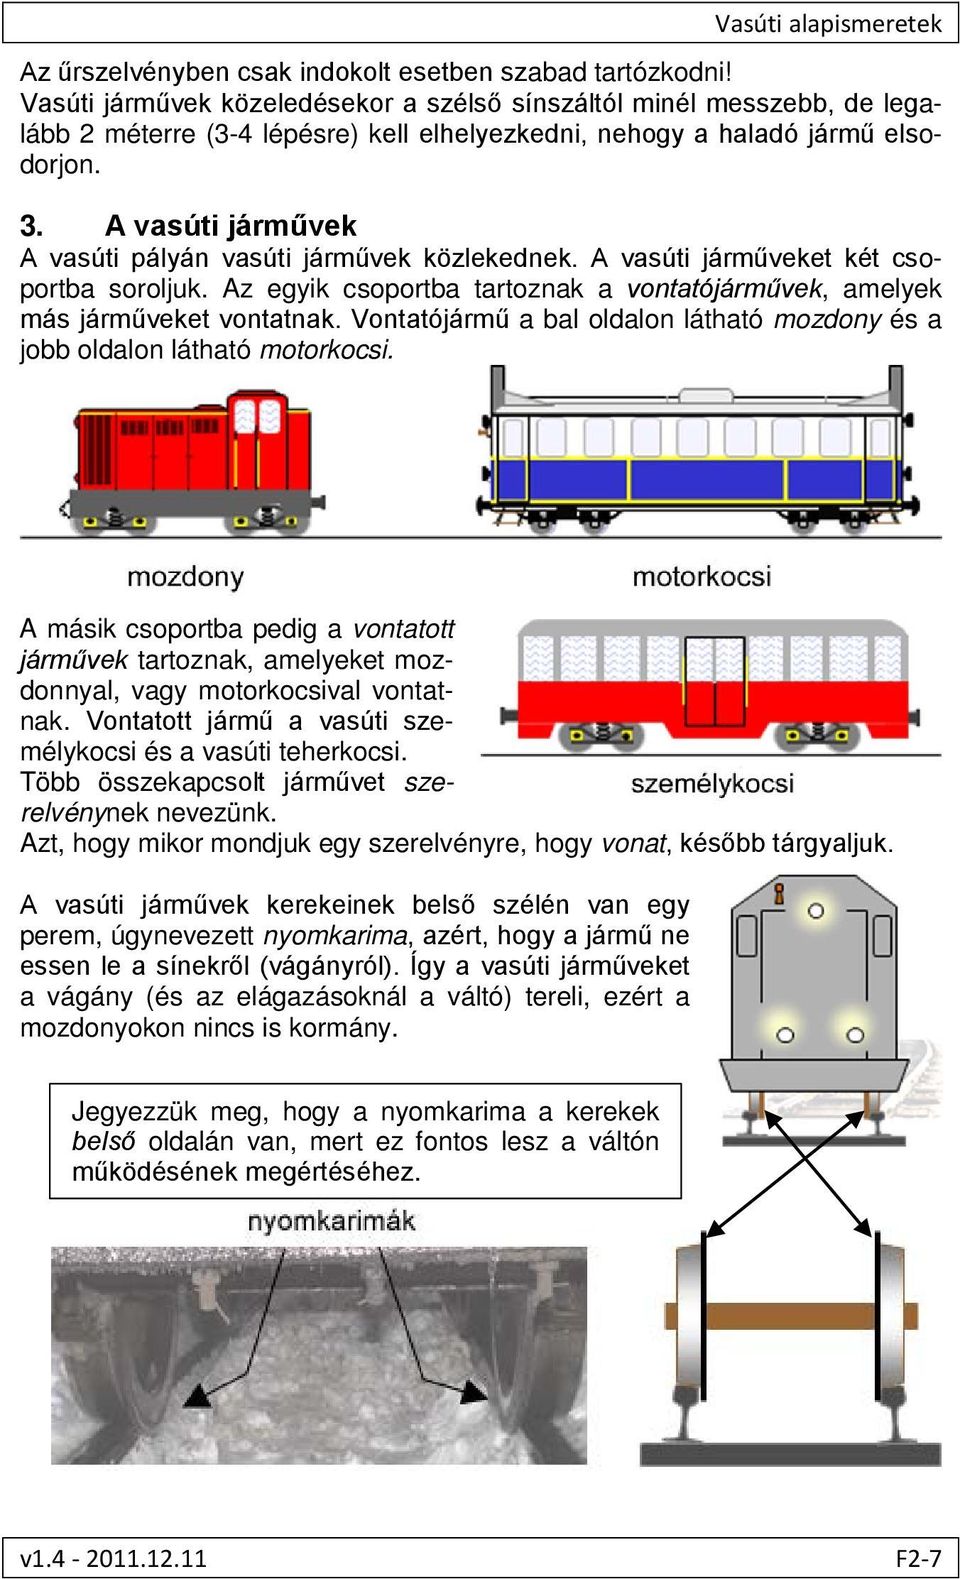 A vasúti járművek A vasúti pályán vasúti járművek közlekednek. A vasúti járműveket két csoportba soroljuk. Az egyik csoportba tartoznak a vontatójárművek, amelyek más járműveket vontatnak.